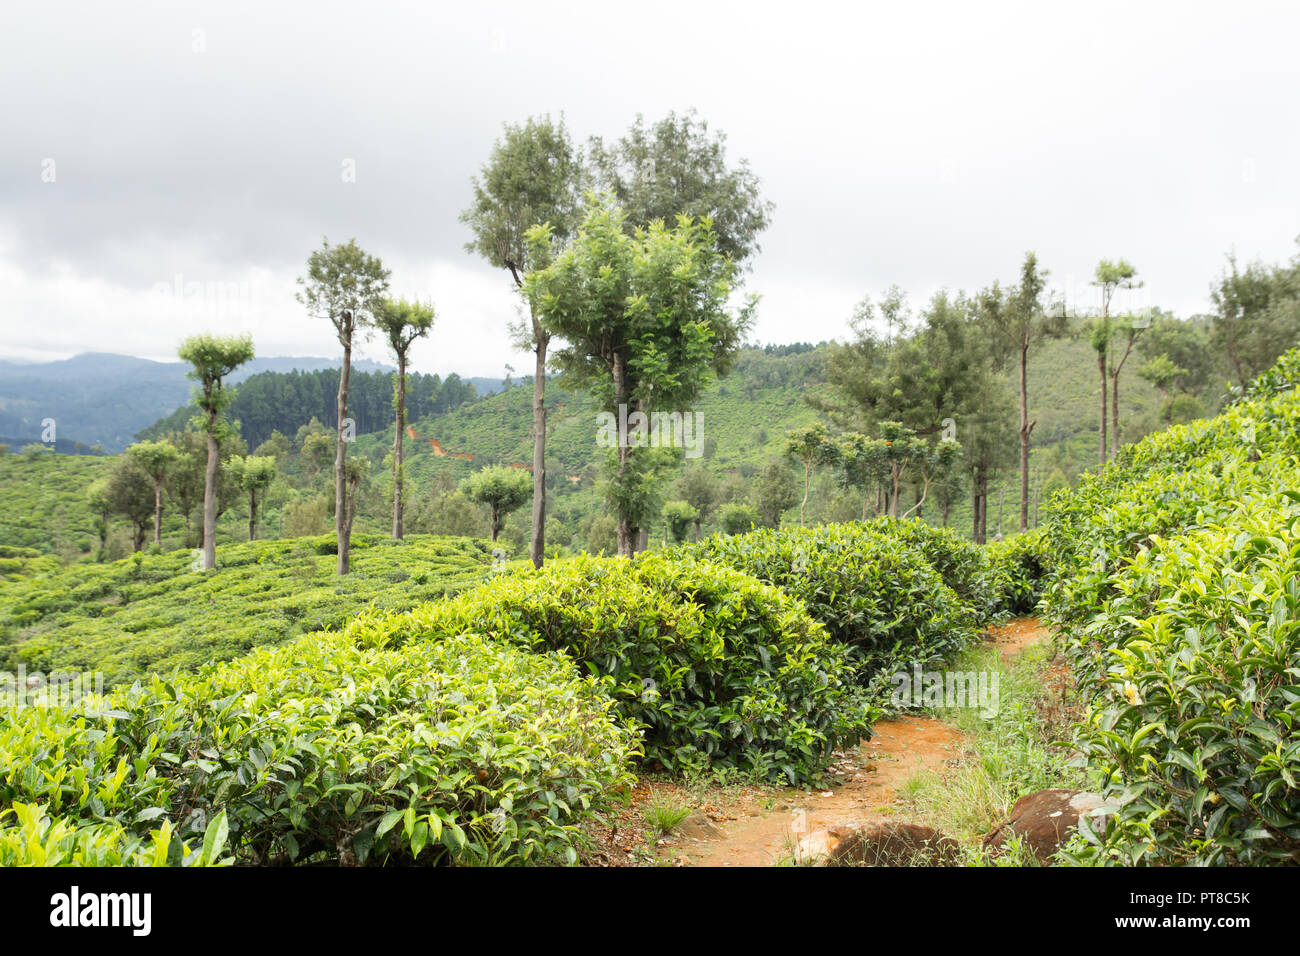 tea plantation scenery Stock Photo